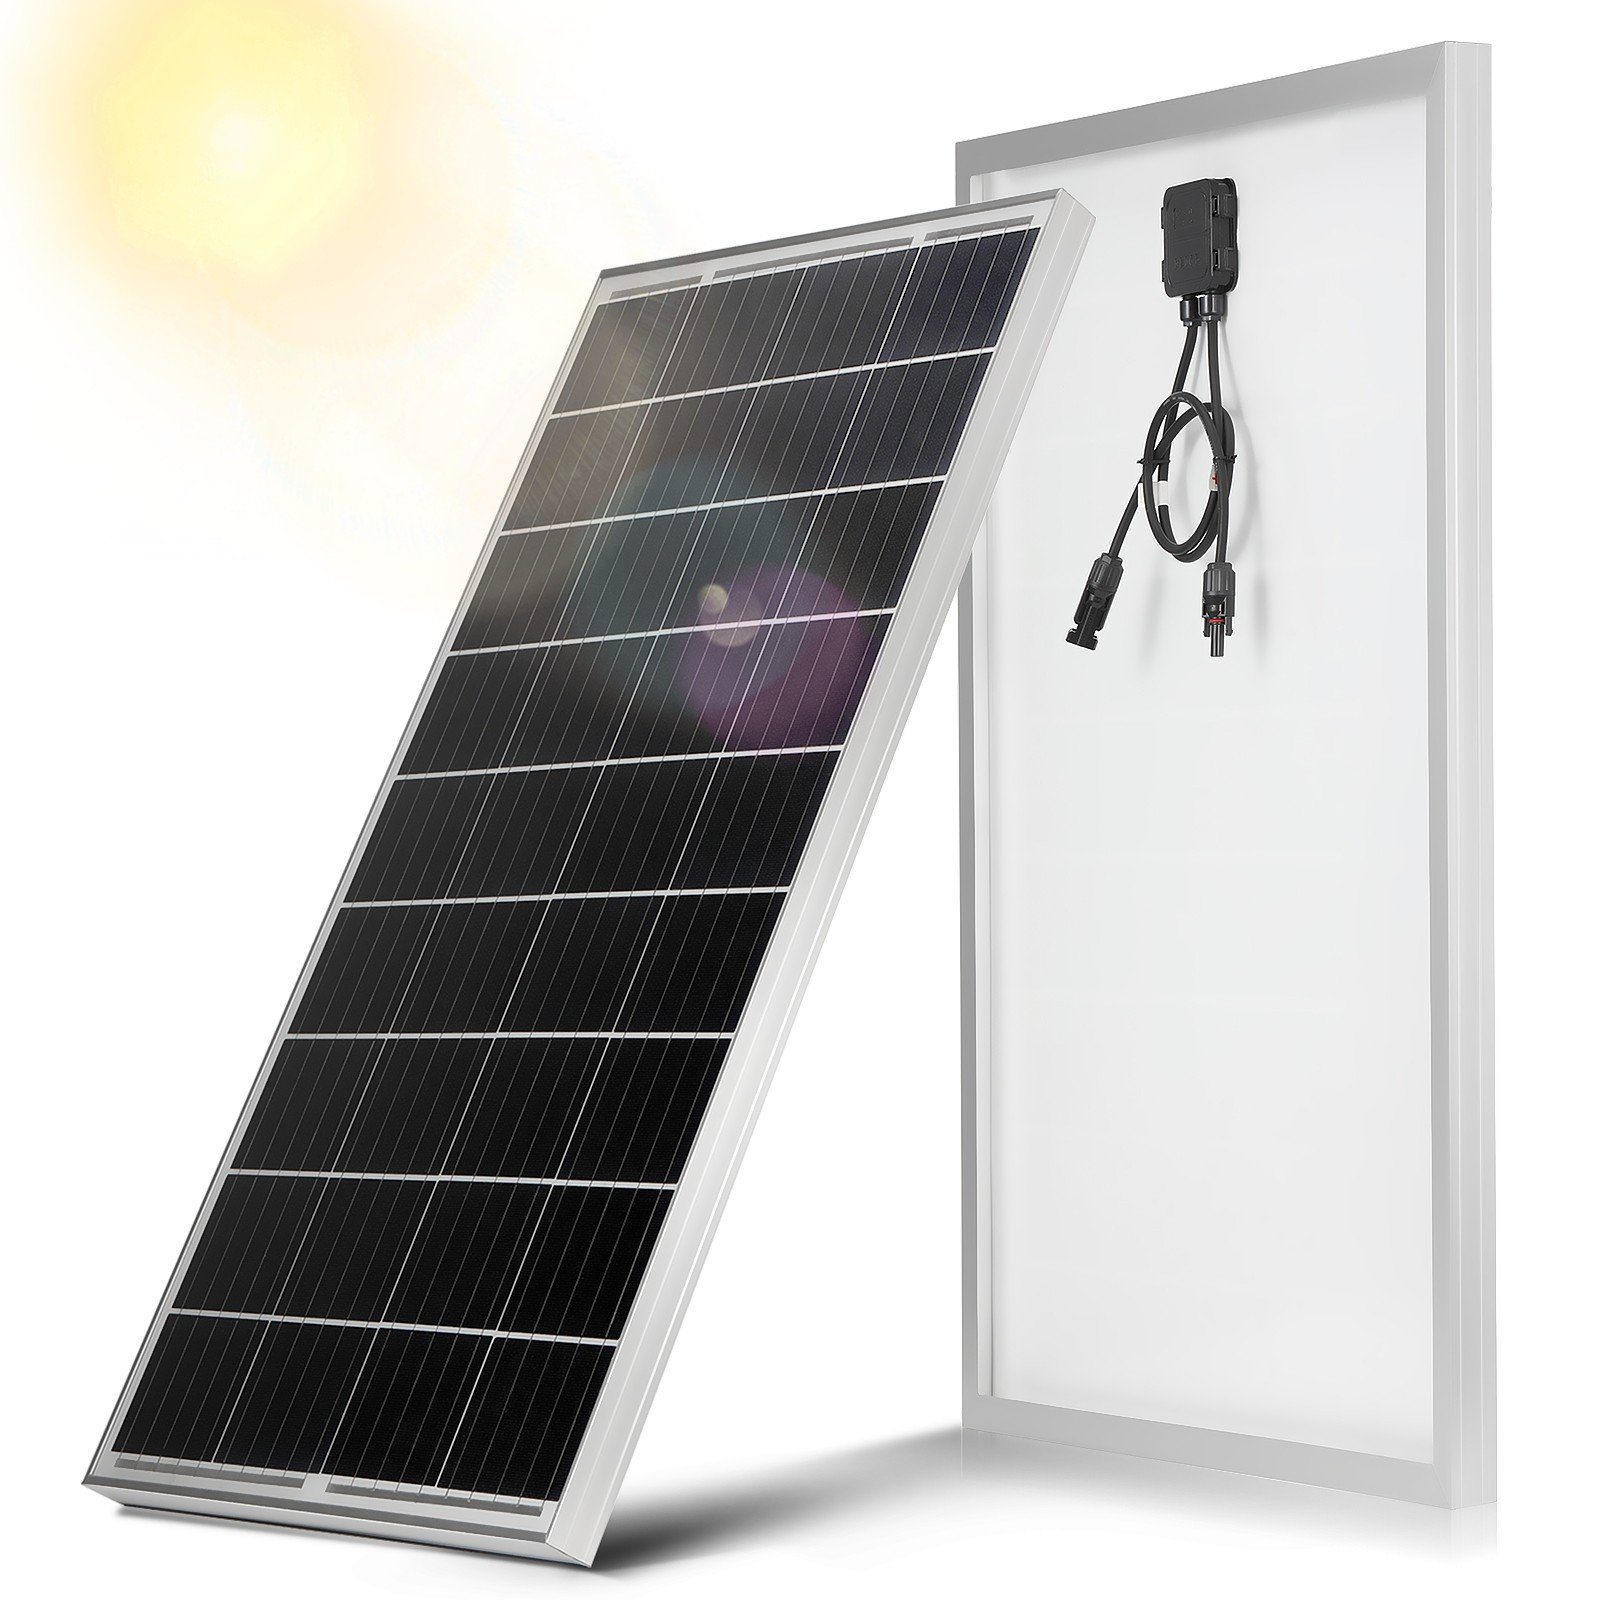 LETGOSPT Solarmodul 100W / 150W 18V Solarmodul Monokristallin Solarpanel Photovoltaik, IP67 Wasserdichte, Ideal zum Aufladen von Batterien Wohnmobil Garte 100W-1 | Solarmodule